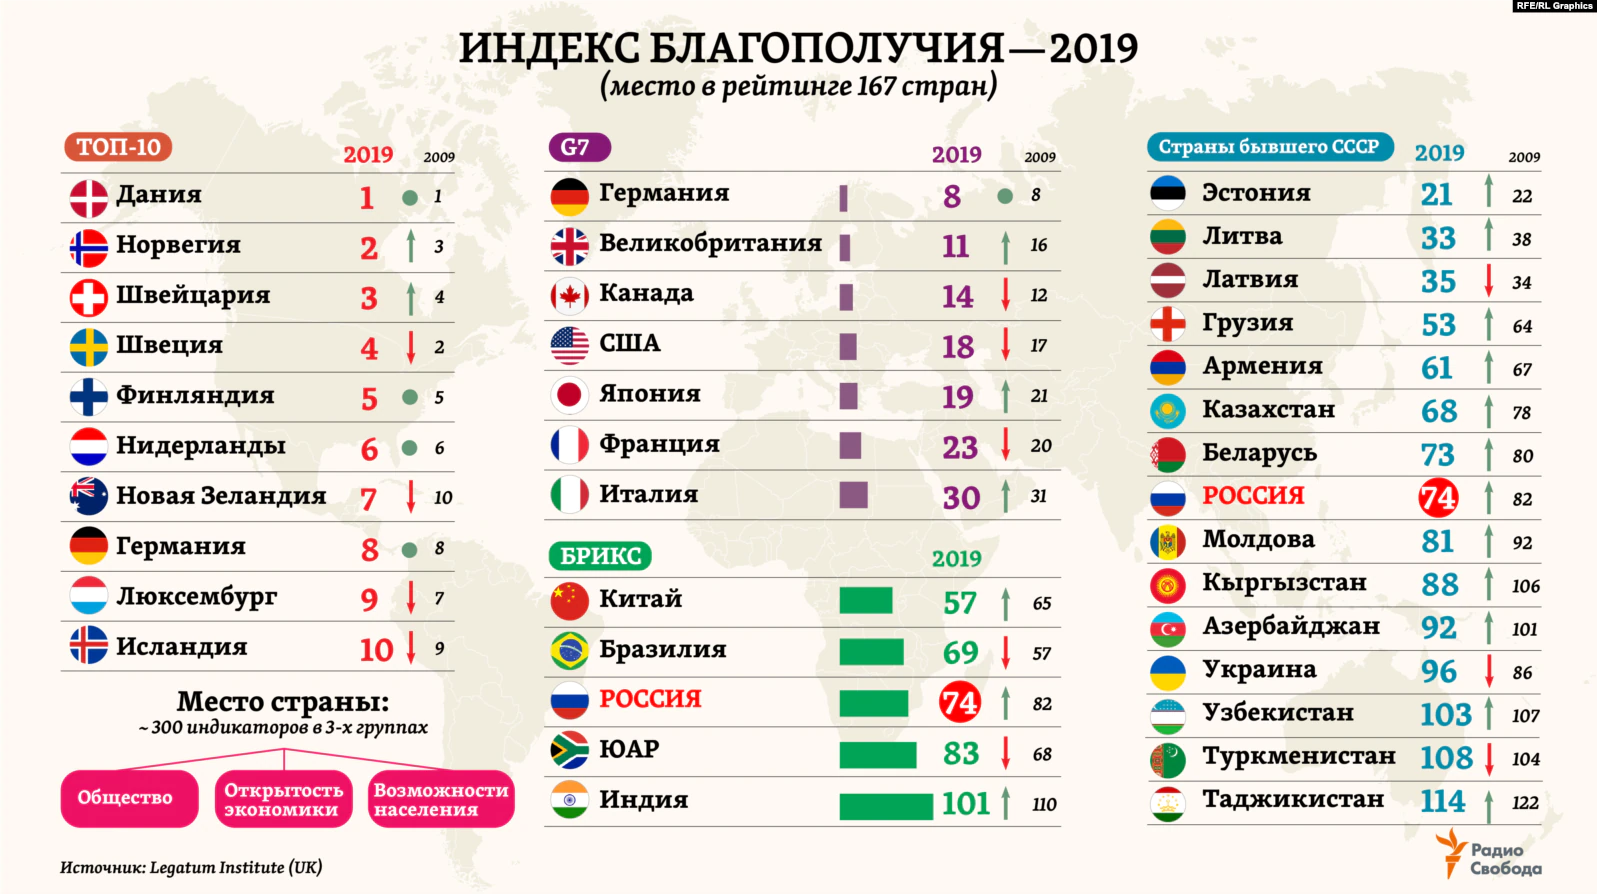 Россия – лучшая страна в мире? знакомимся с рейтингами – где мы лидеры, а где аутсайдеры